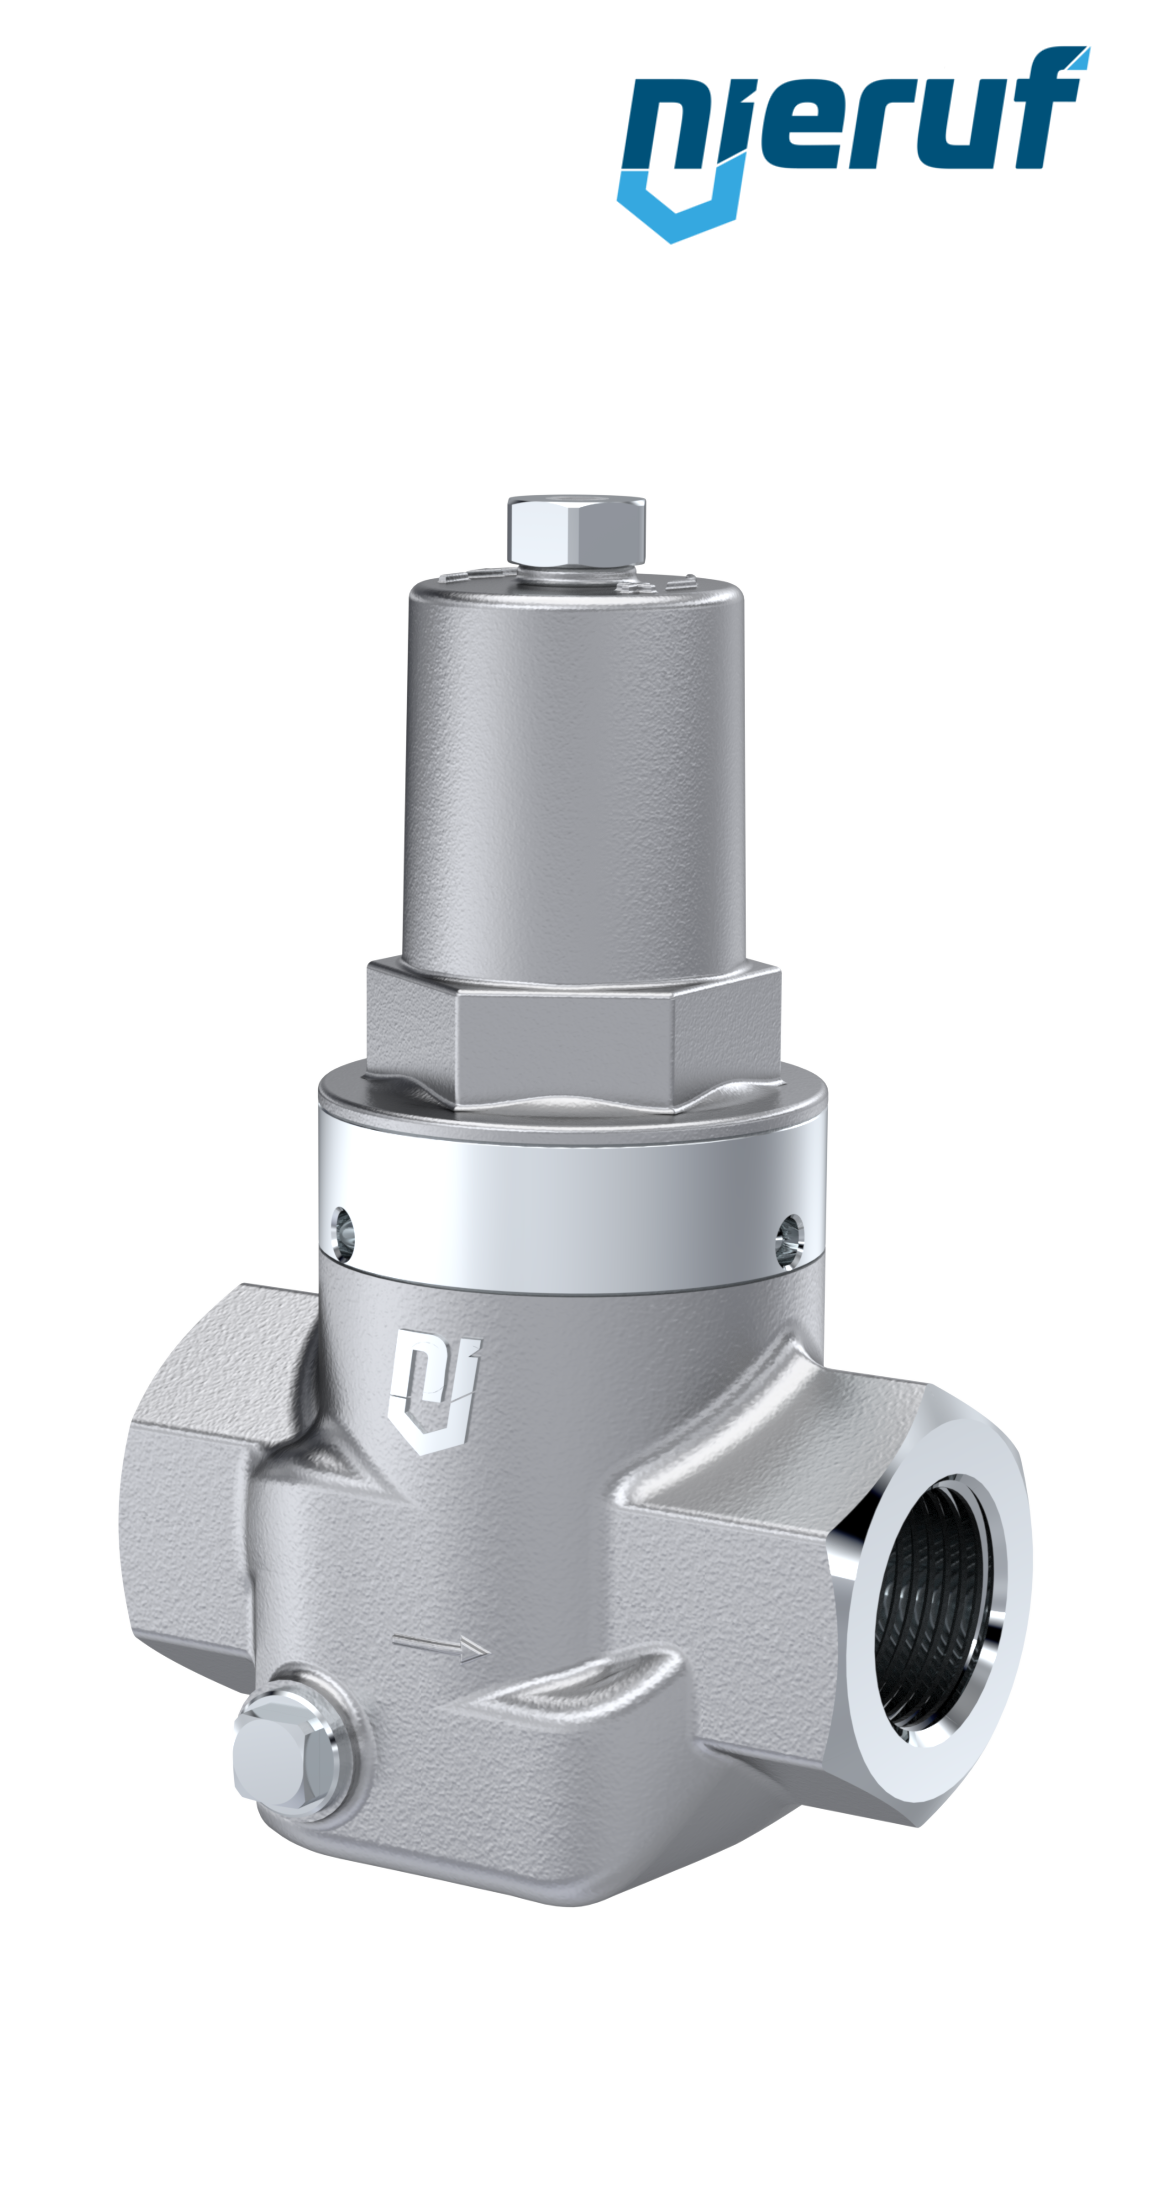 Piston-pressure reducing valve 1" Inch NPT DM10 stainless steel FPM / FKM 2.0 - 20.0 bar